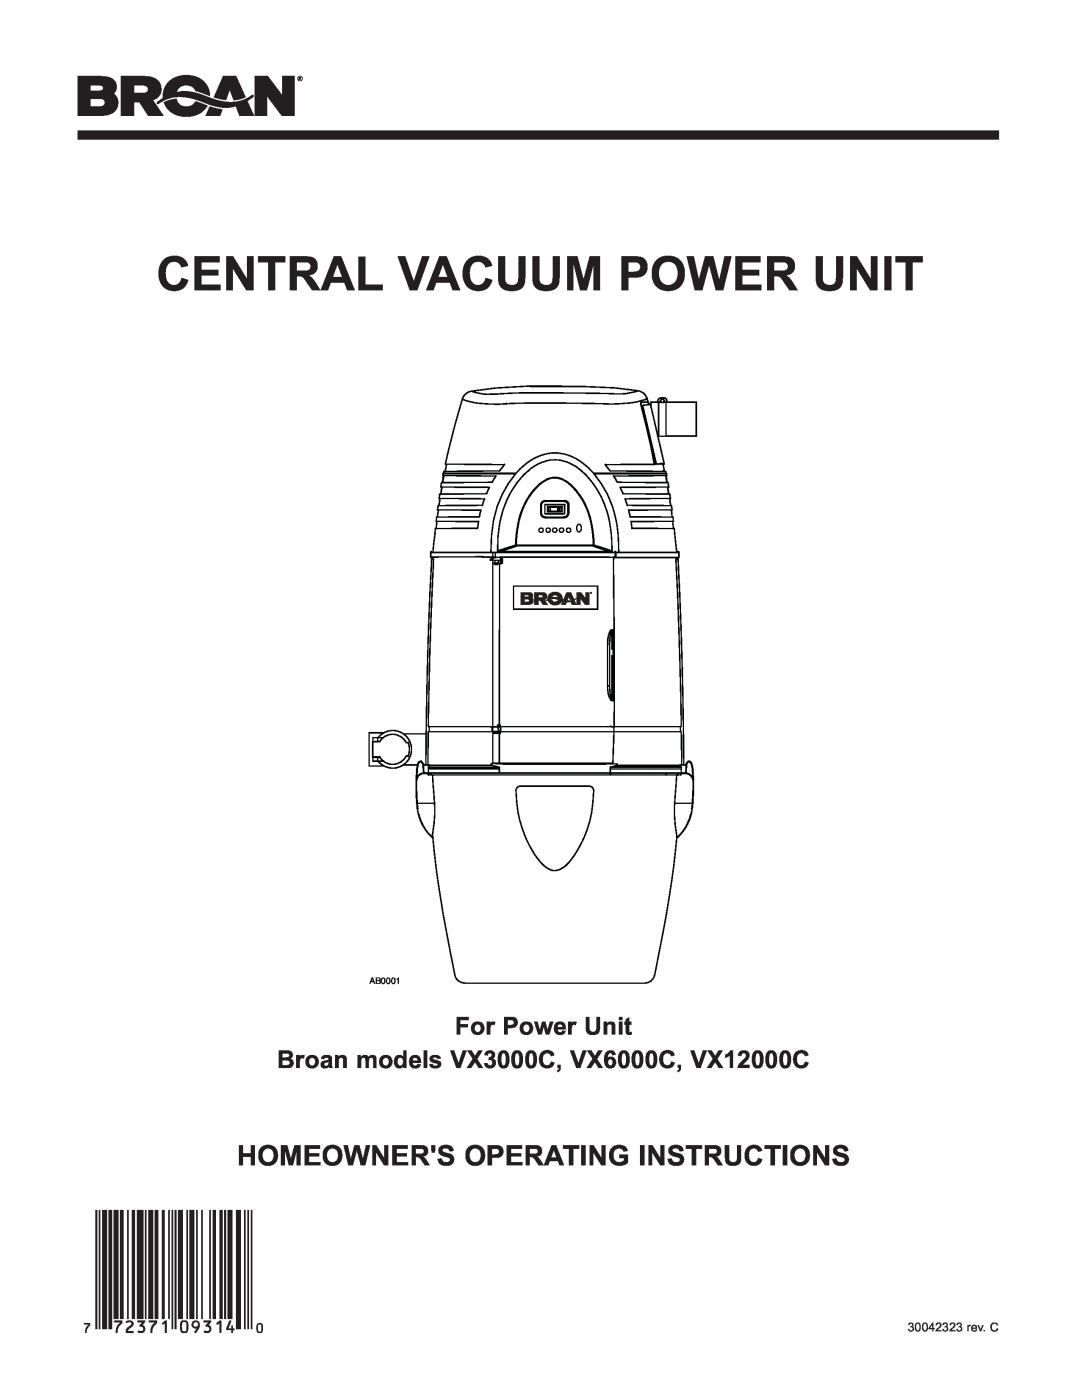 Broan manual For Power Unit Broan models VX3000C, VX6000C, VX12000C, Central Vacuum Power Unit, AB0001 